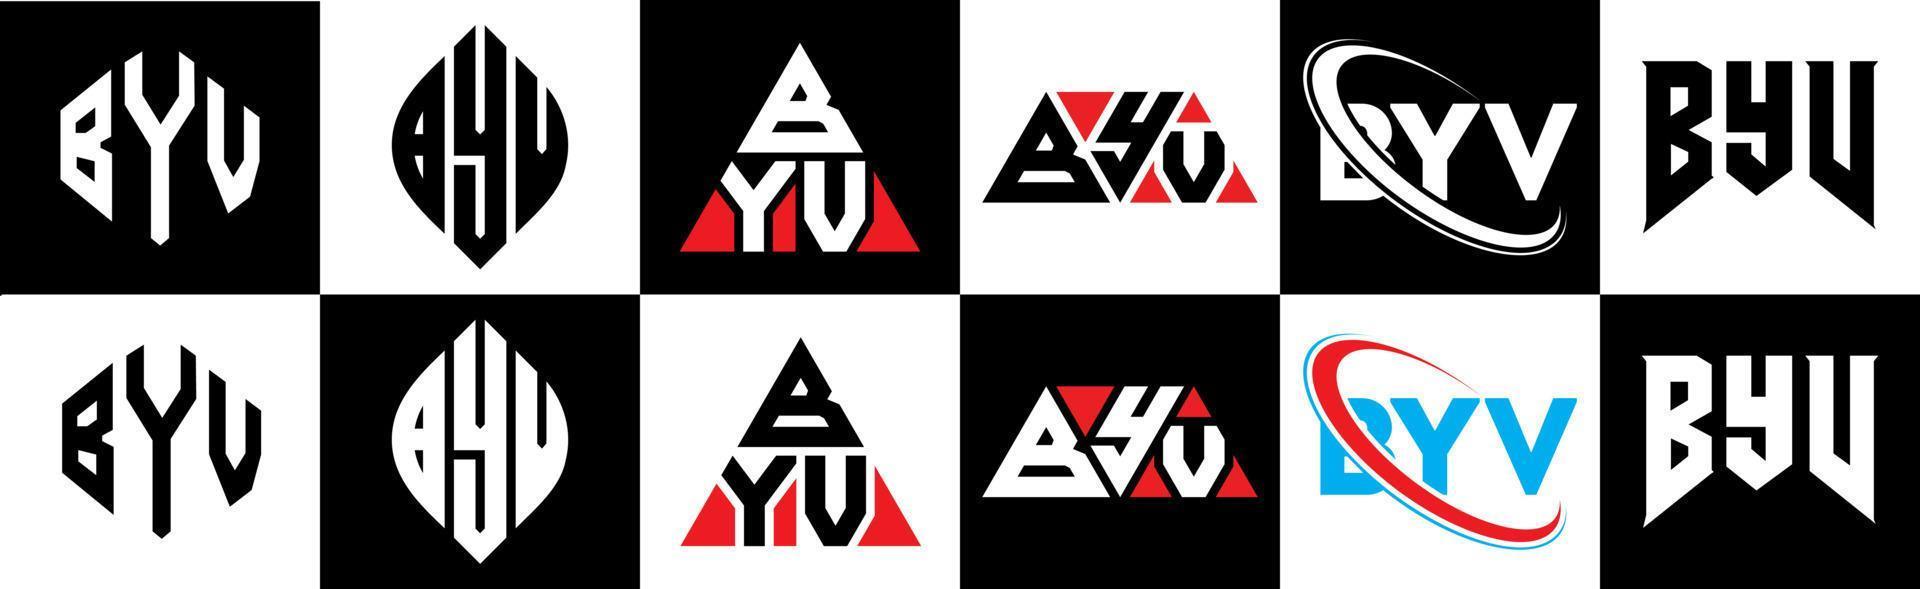 byv-Buchstaben-Logo-Design in sechs Stilen. Byv Polygon, Kreis, Dreieck, Sechseck, flacher und einfacher Stil mit schwarz-weißem Buchstabenlogo in einer Zeichenfläche. byv minimalistisches und klassisches Logo vektor